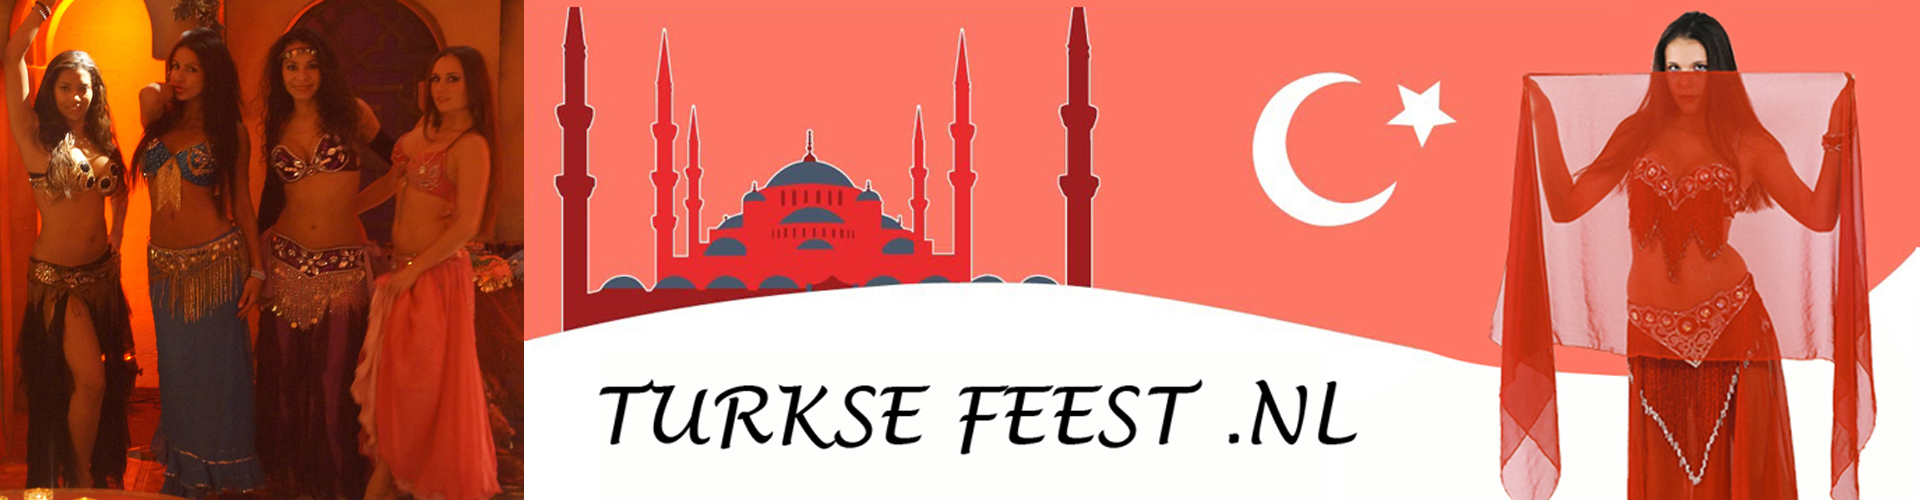 Turkse feest pakketkortingen